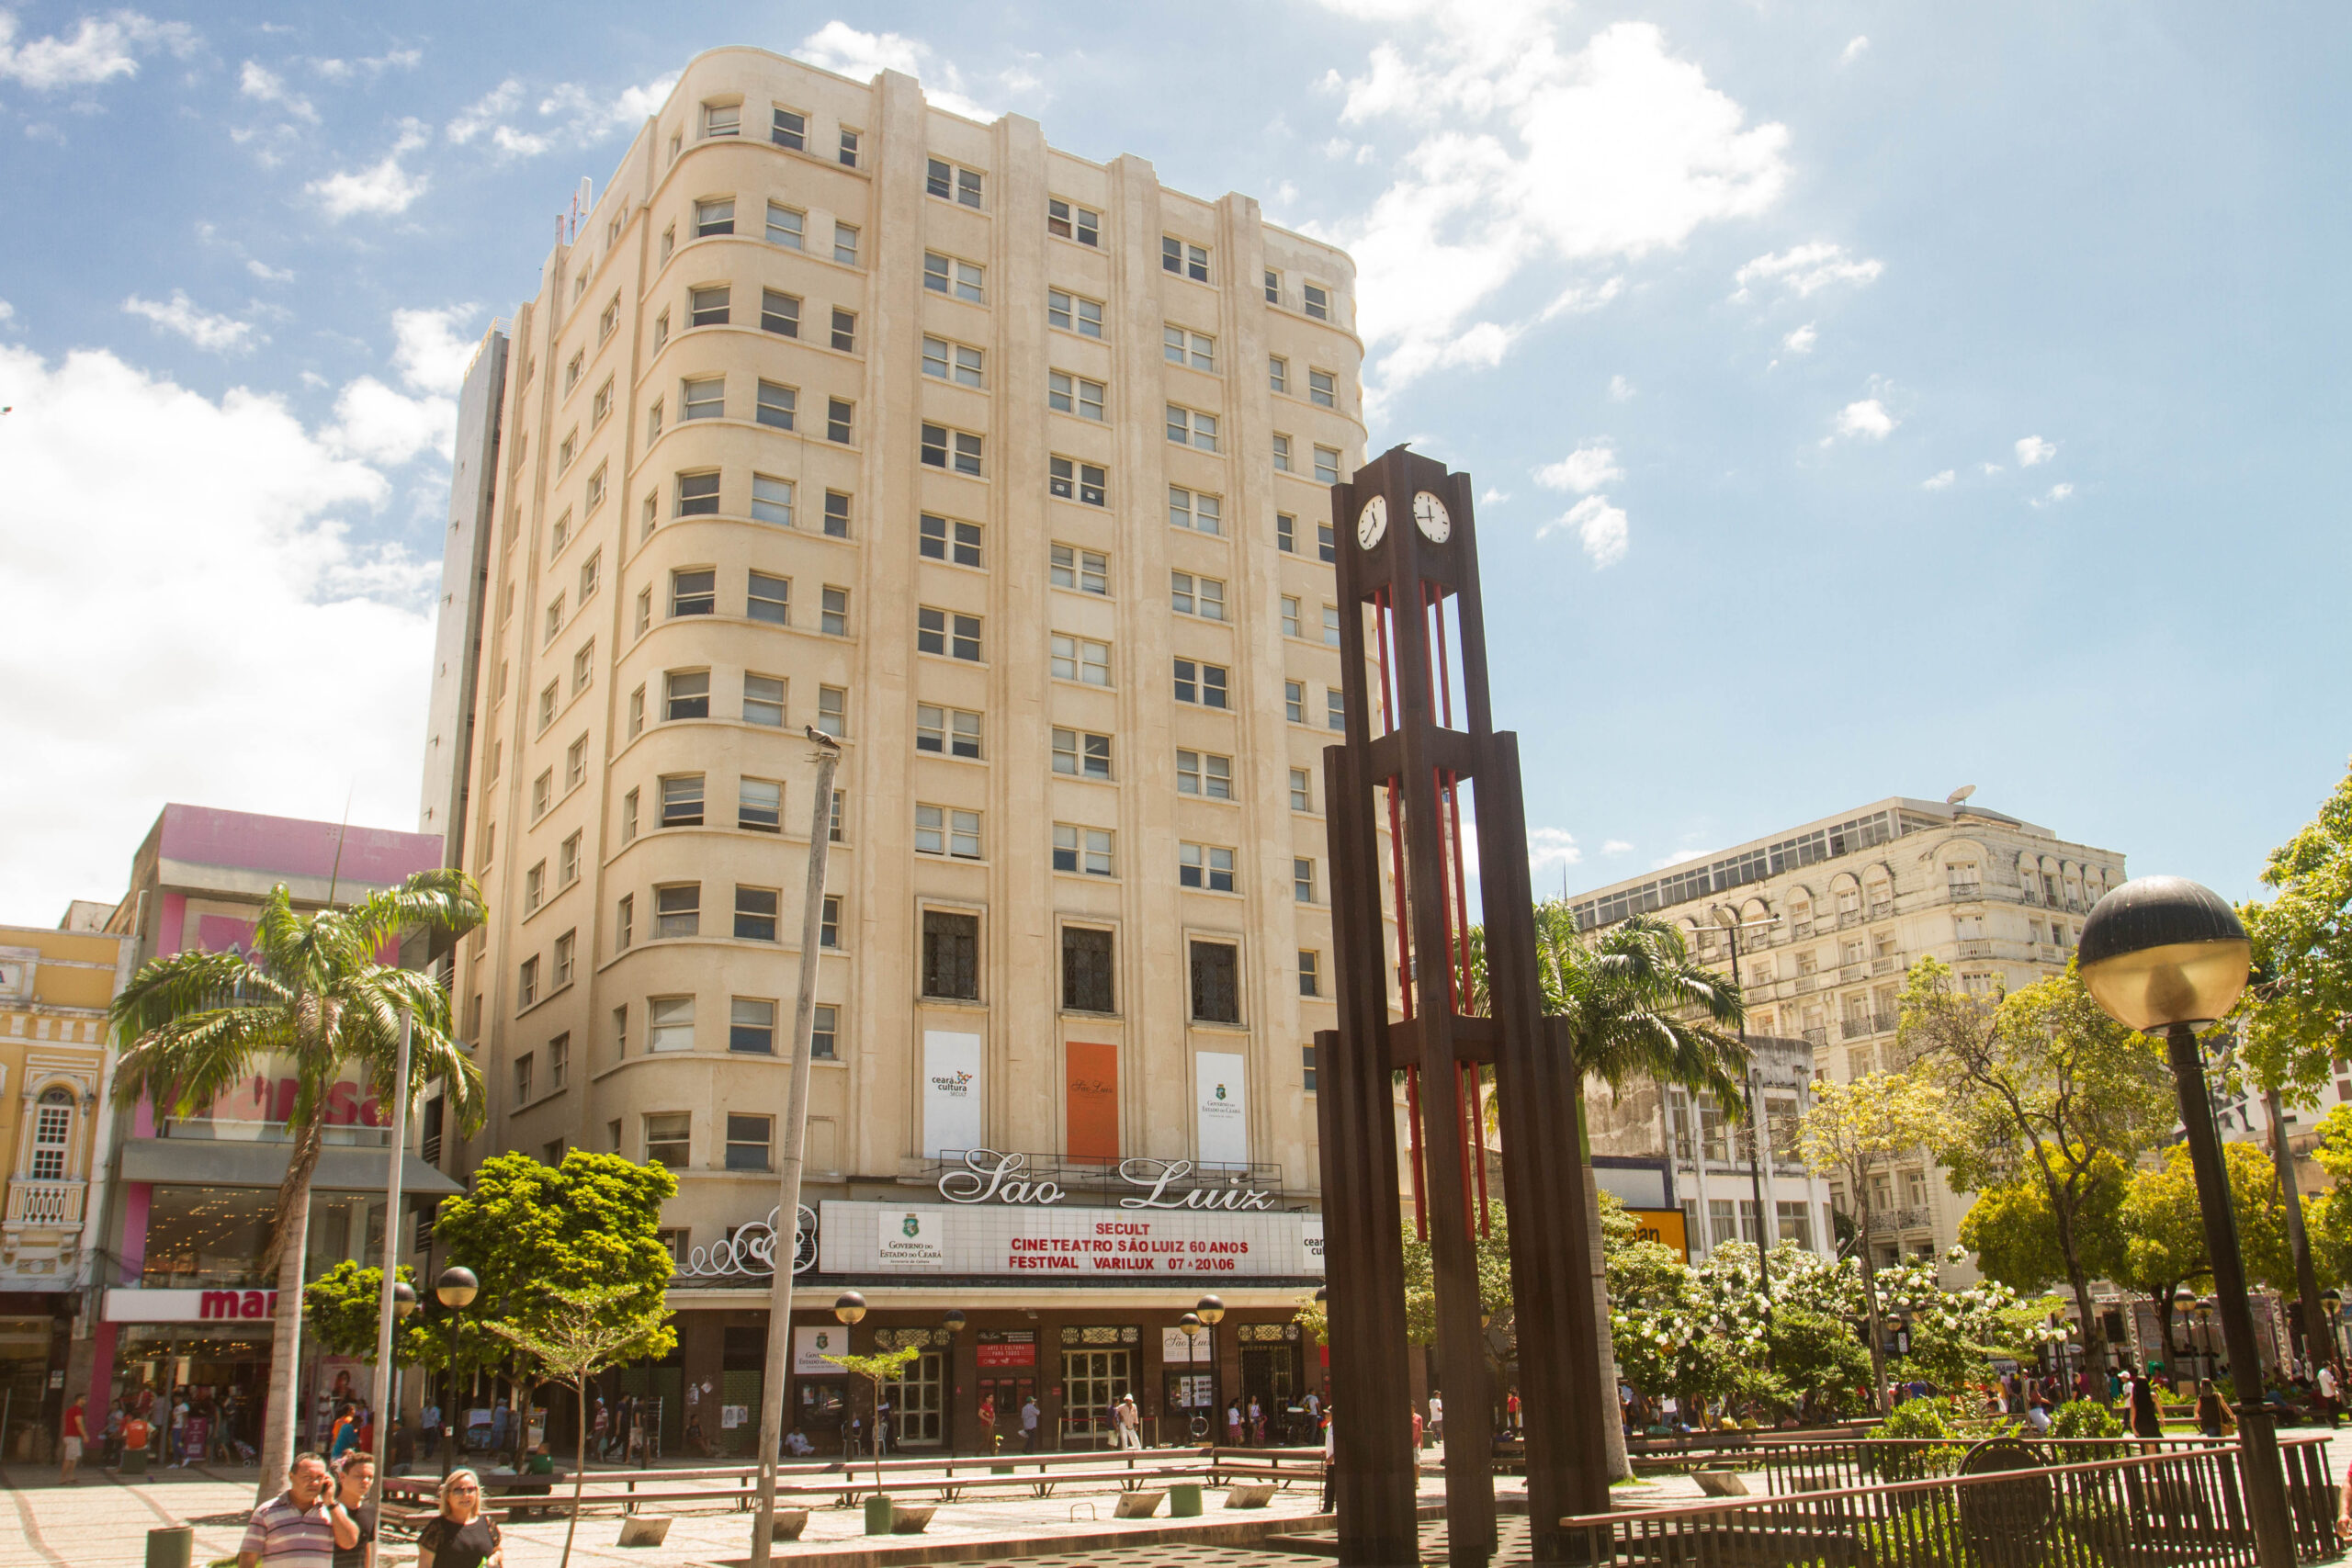 Foto da fachada do Cineteatro São Luiz. É possível ver parte da Praça do Ferreira, onde fica localização do Cineteatro. É possível ver o relógio alto e característico do local.